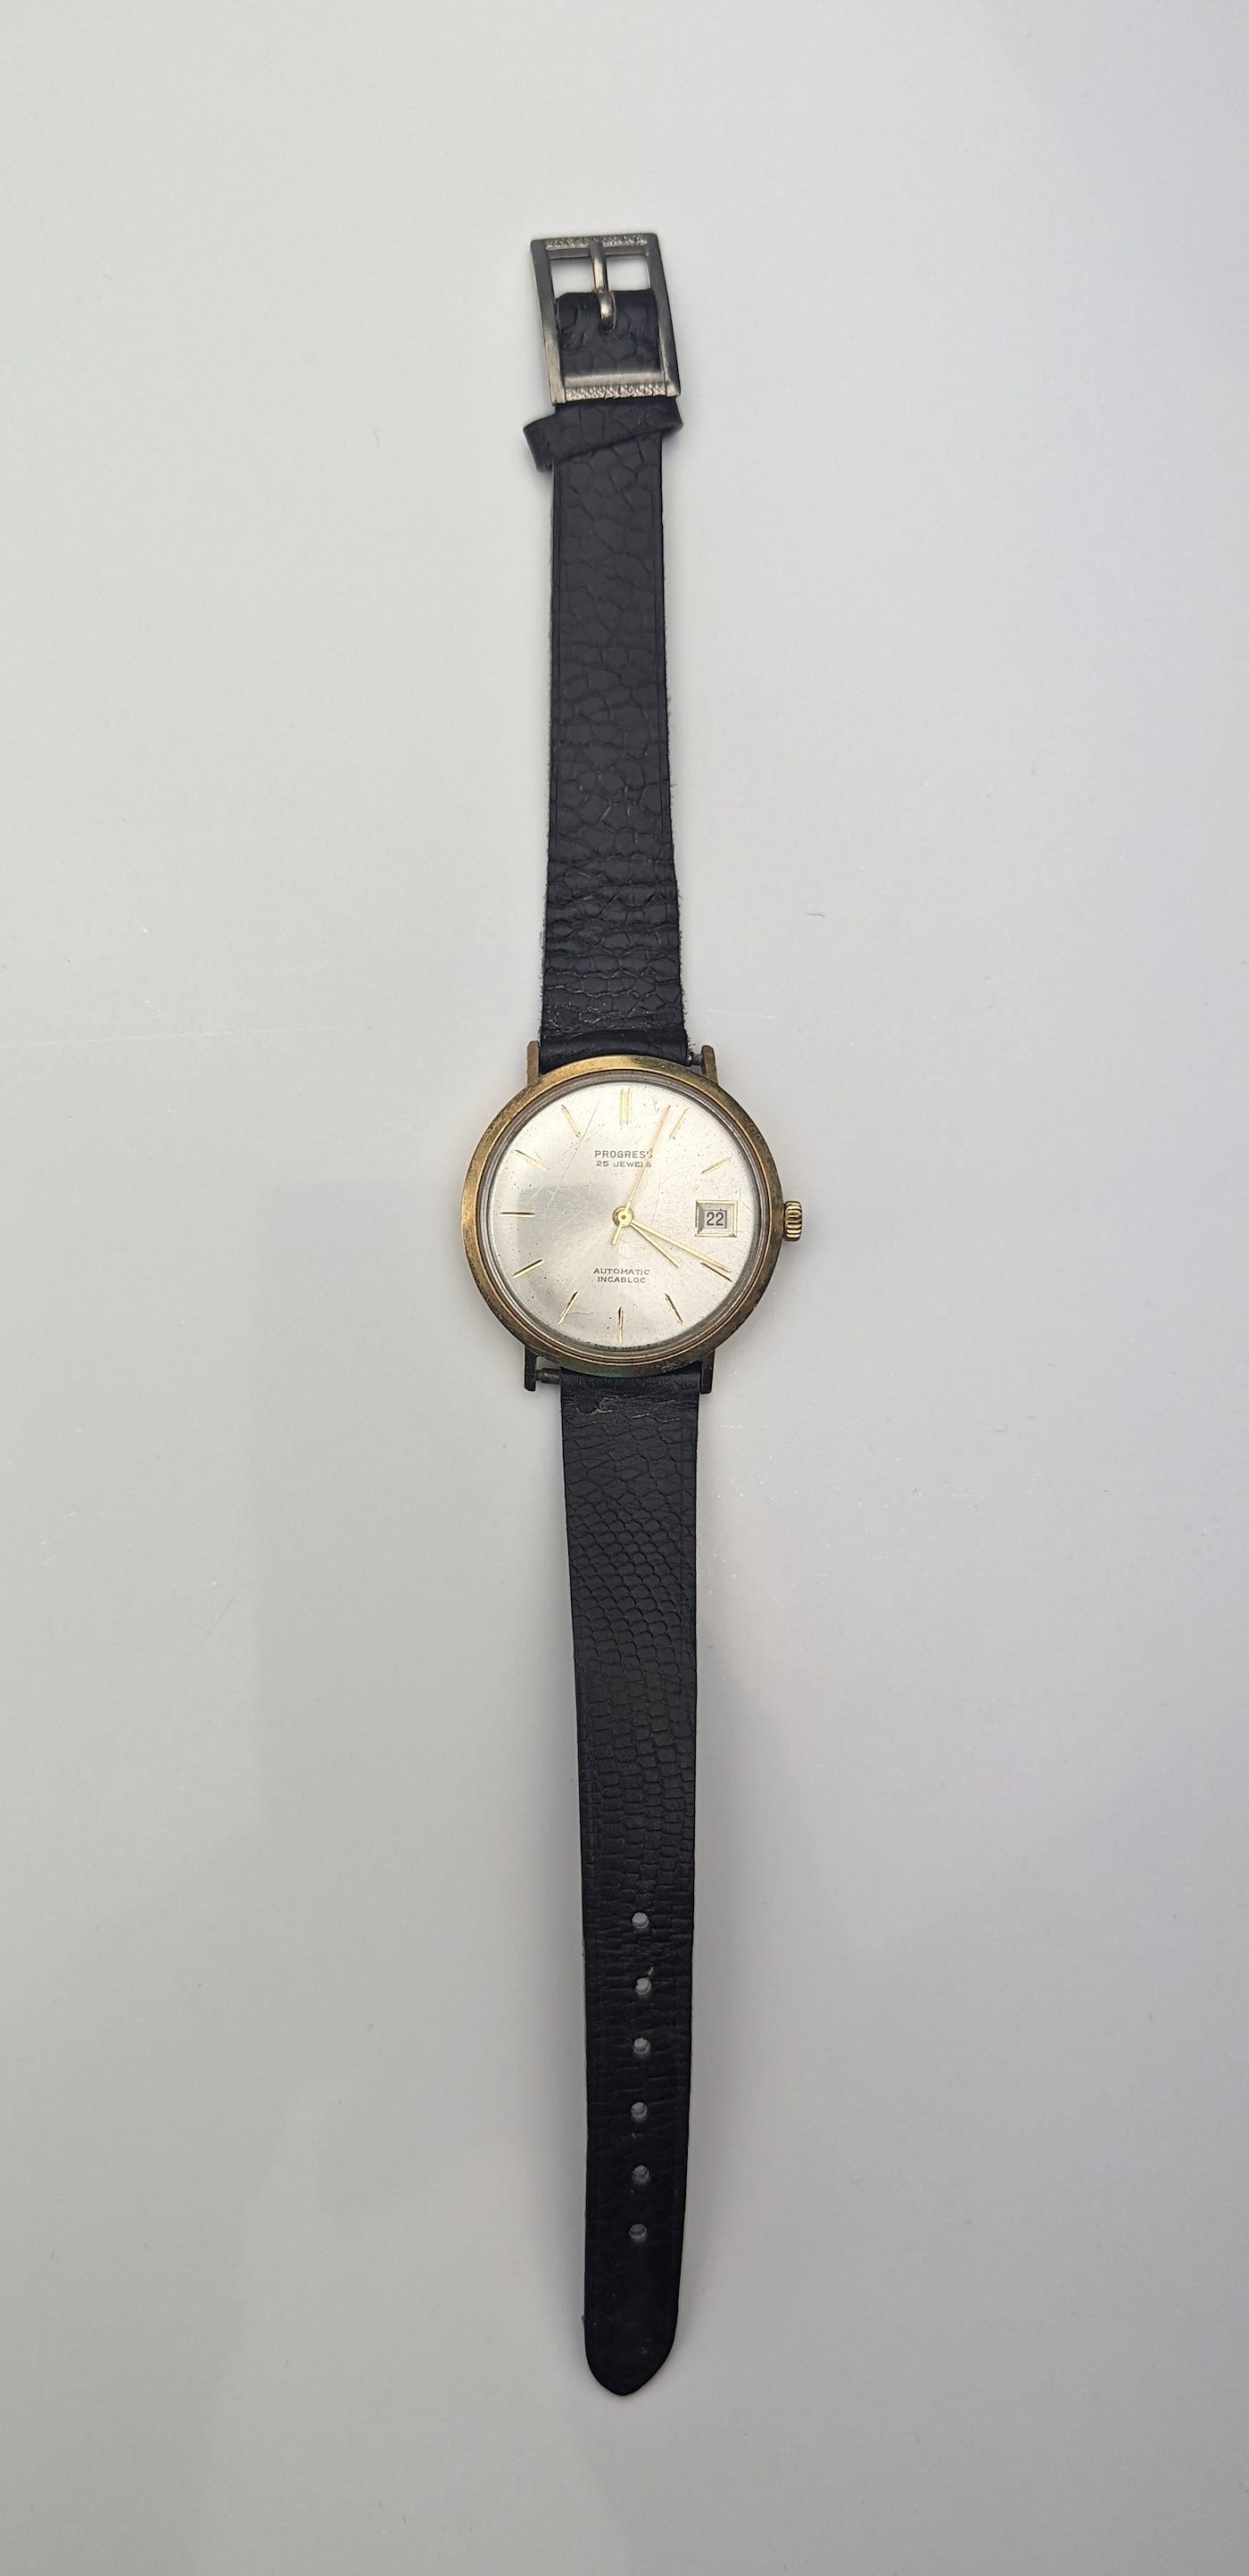 Progress - Pánské náramkové hodinky Progress, zlato 750/1000, hrubá hmotnost 29,95 g